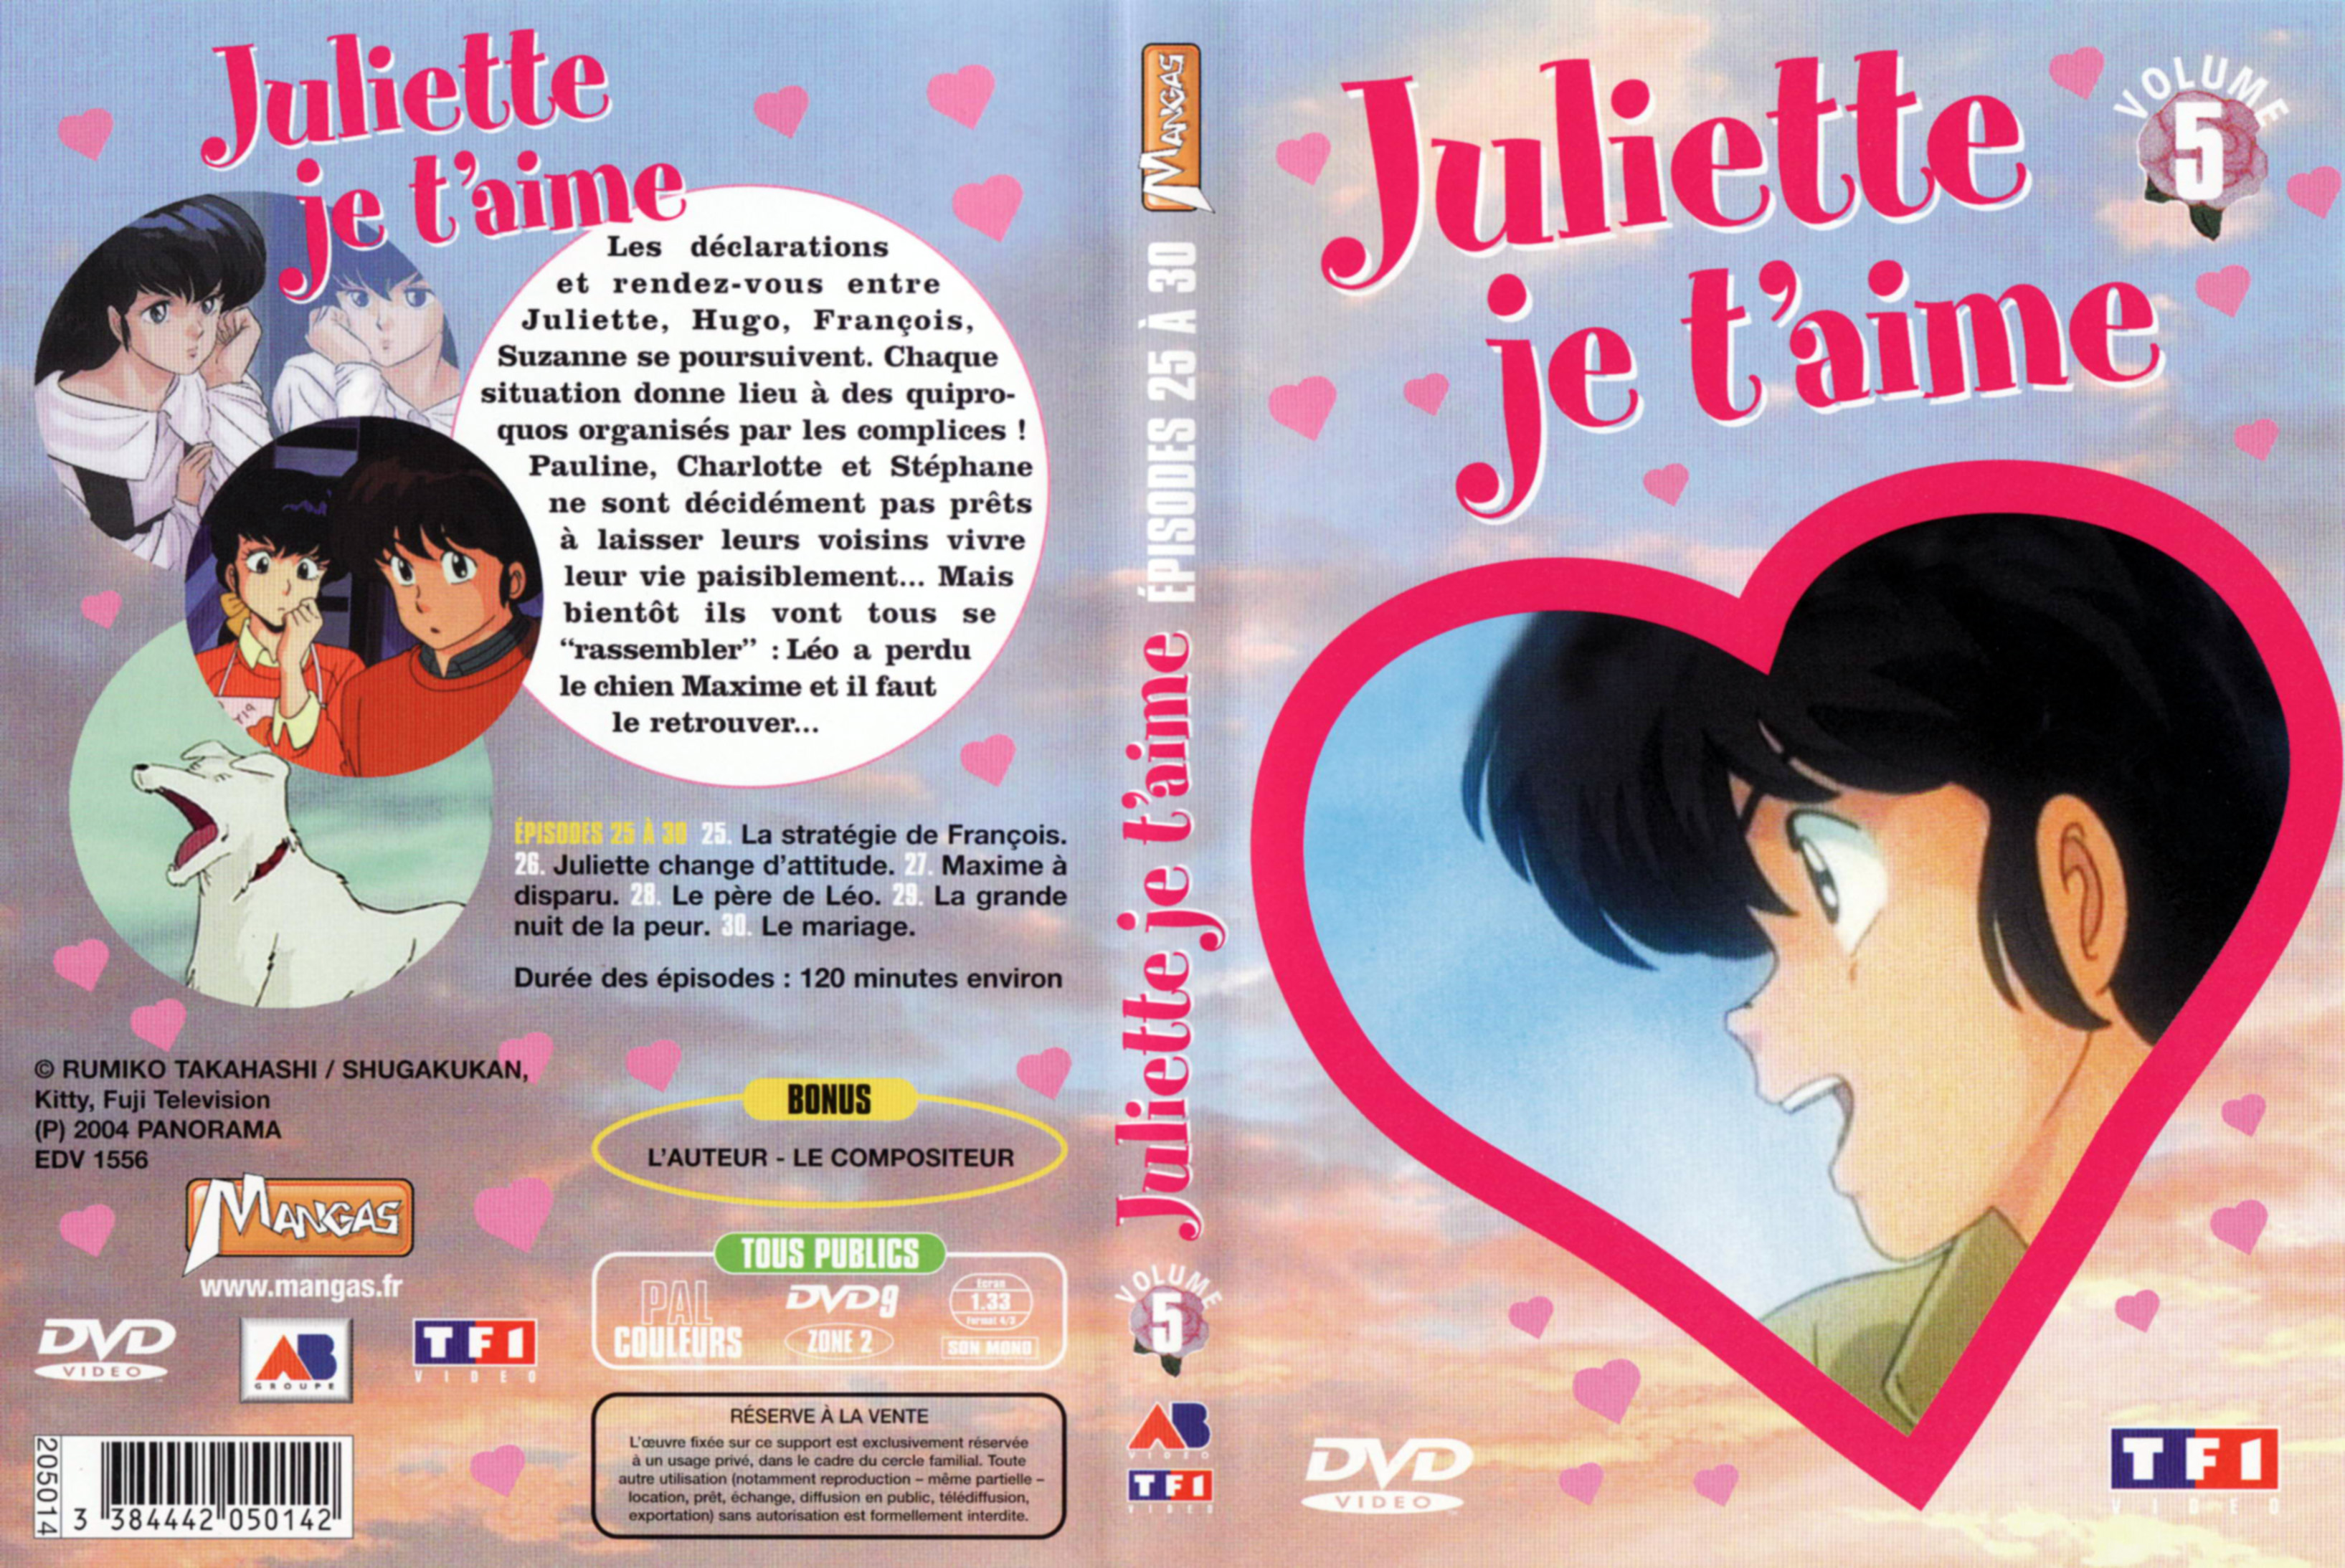 Jaquette DVD Juliette je t aime vol 05